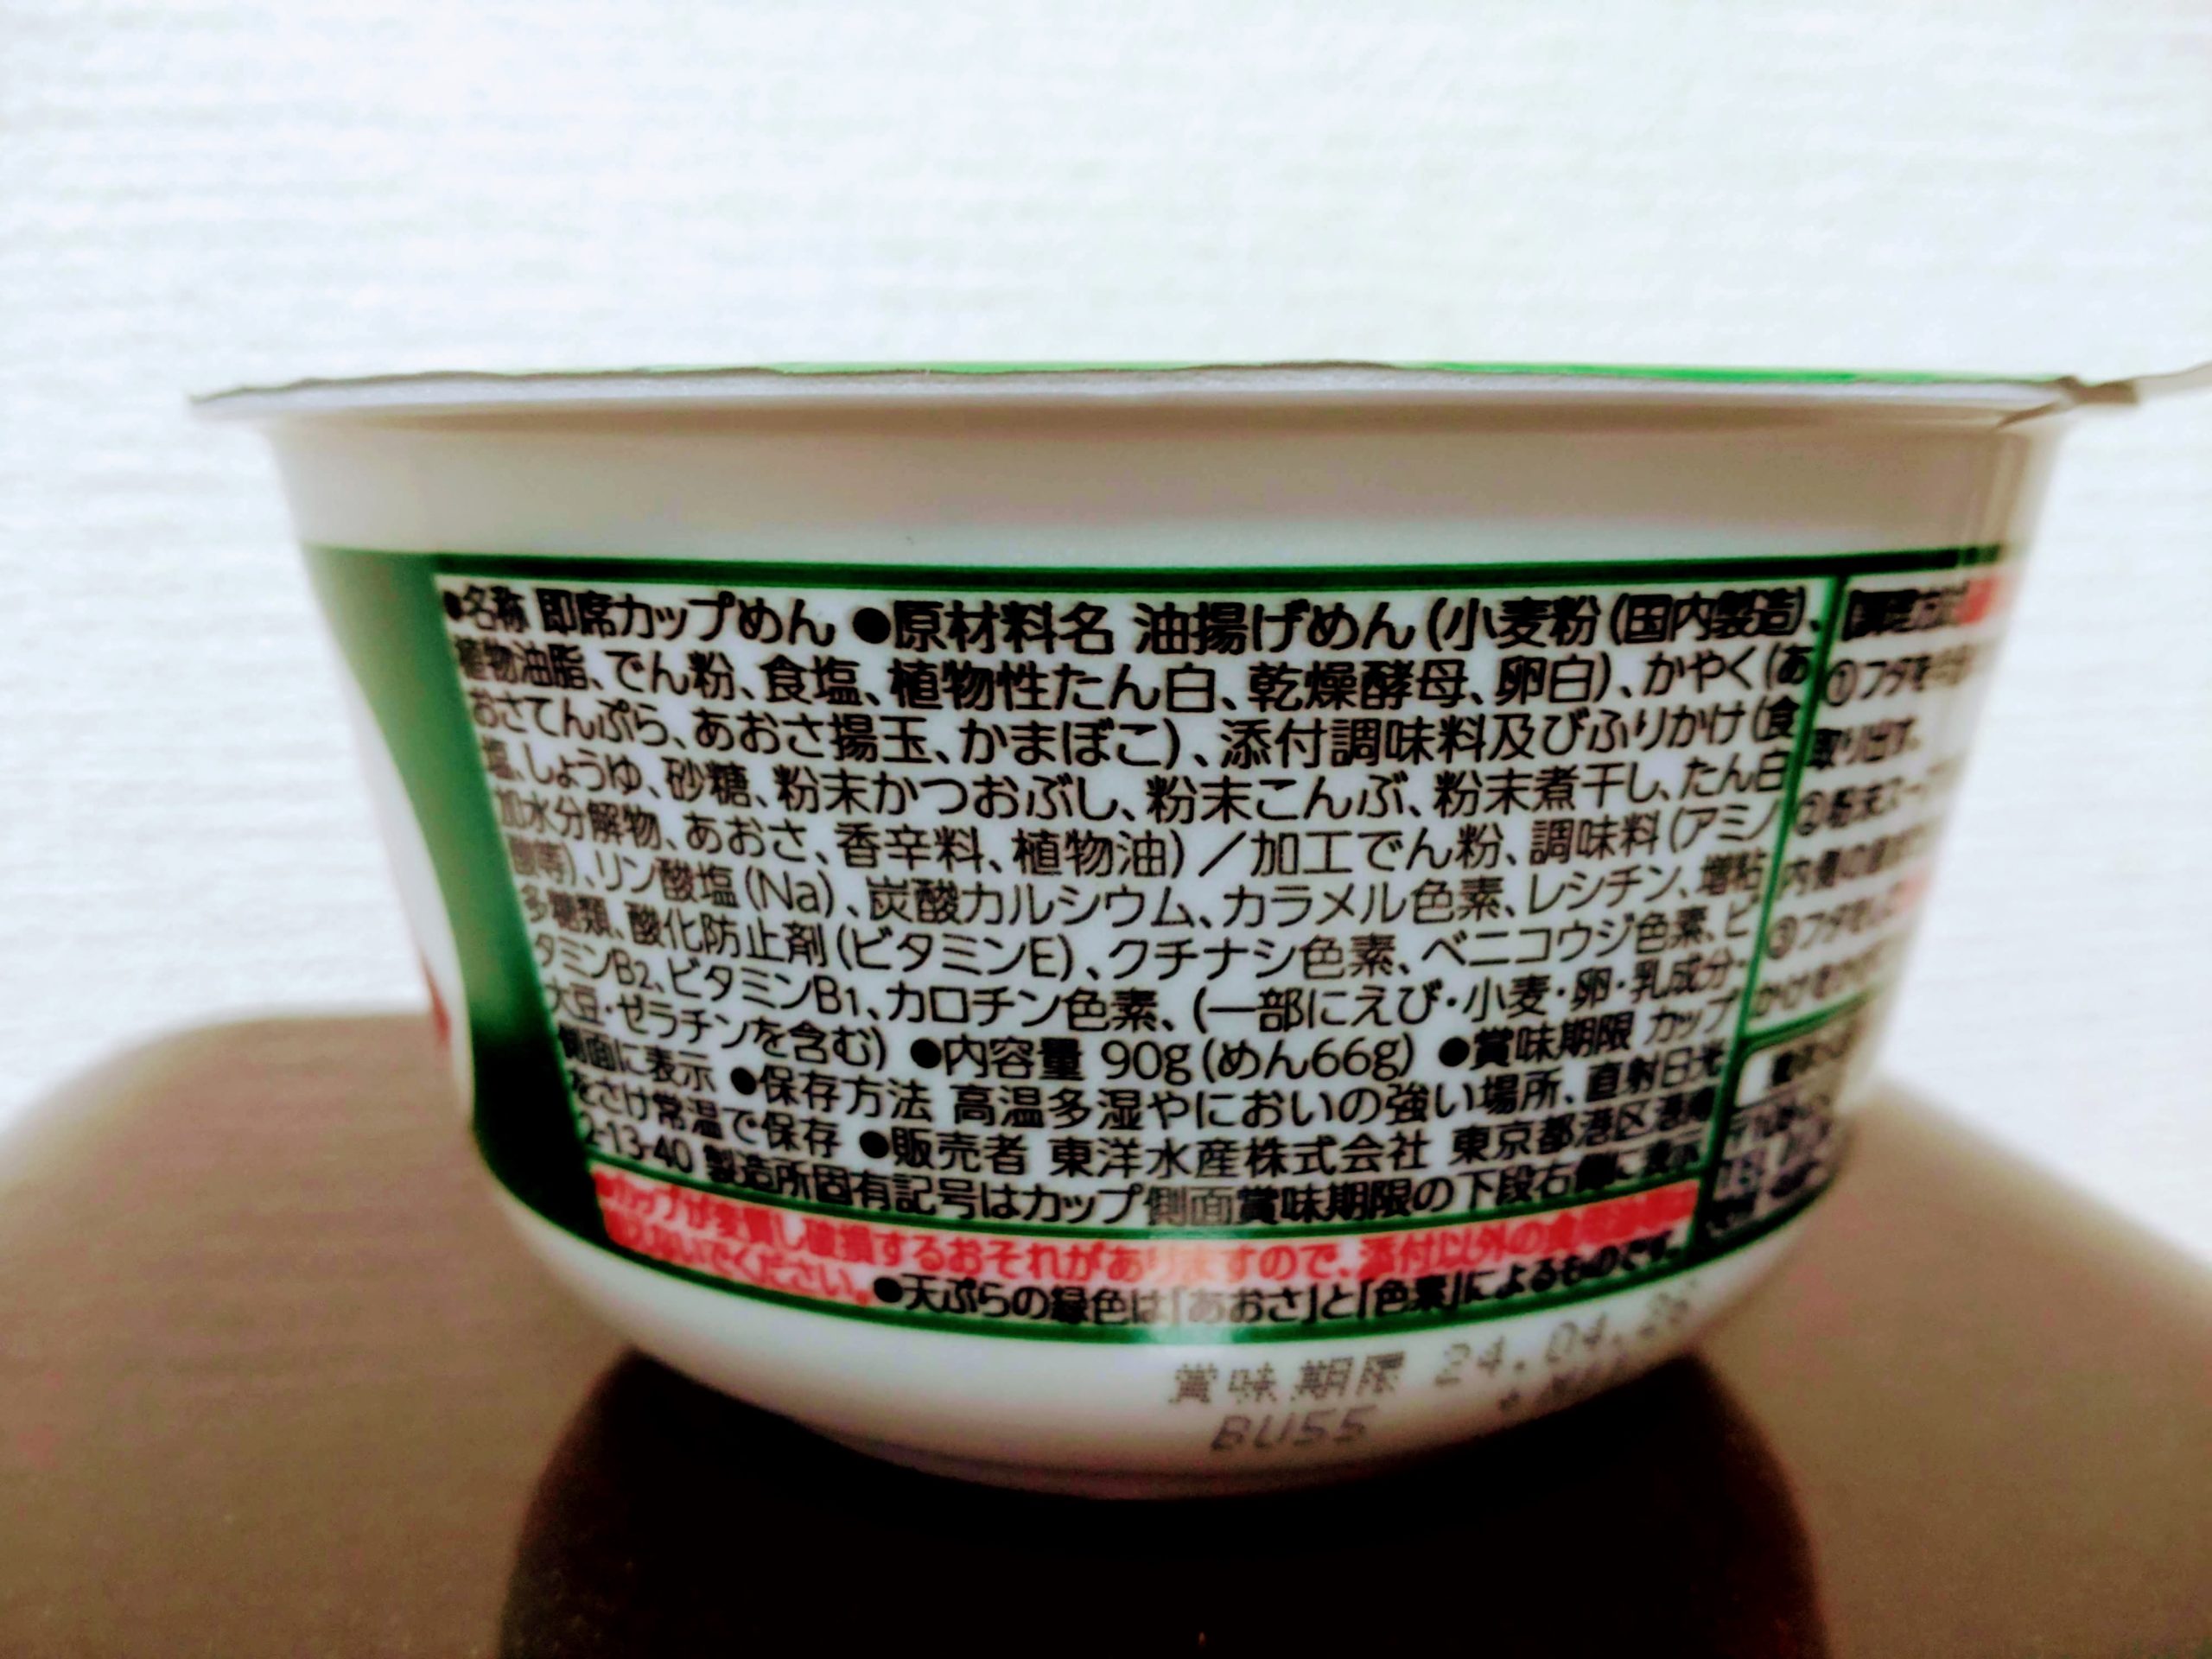 マルちゃん 緑の天ぷらうどんの食品表示